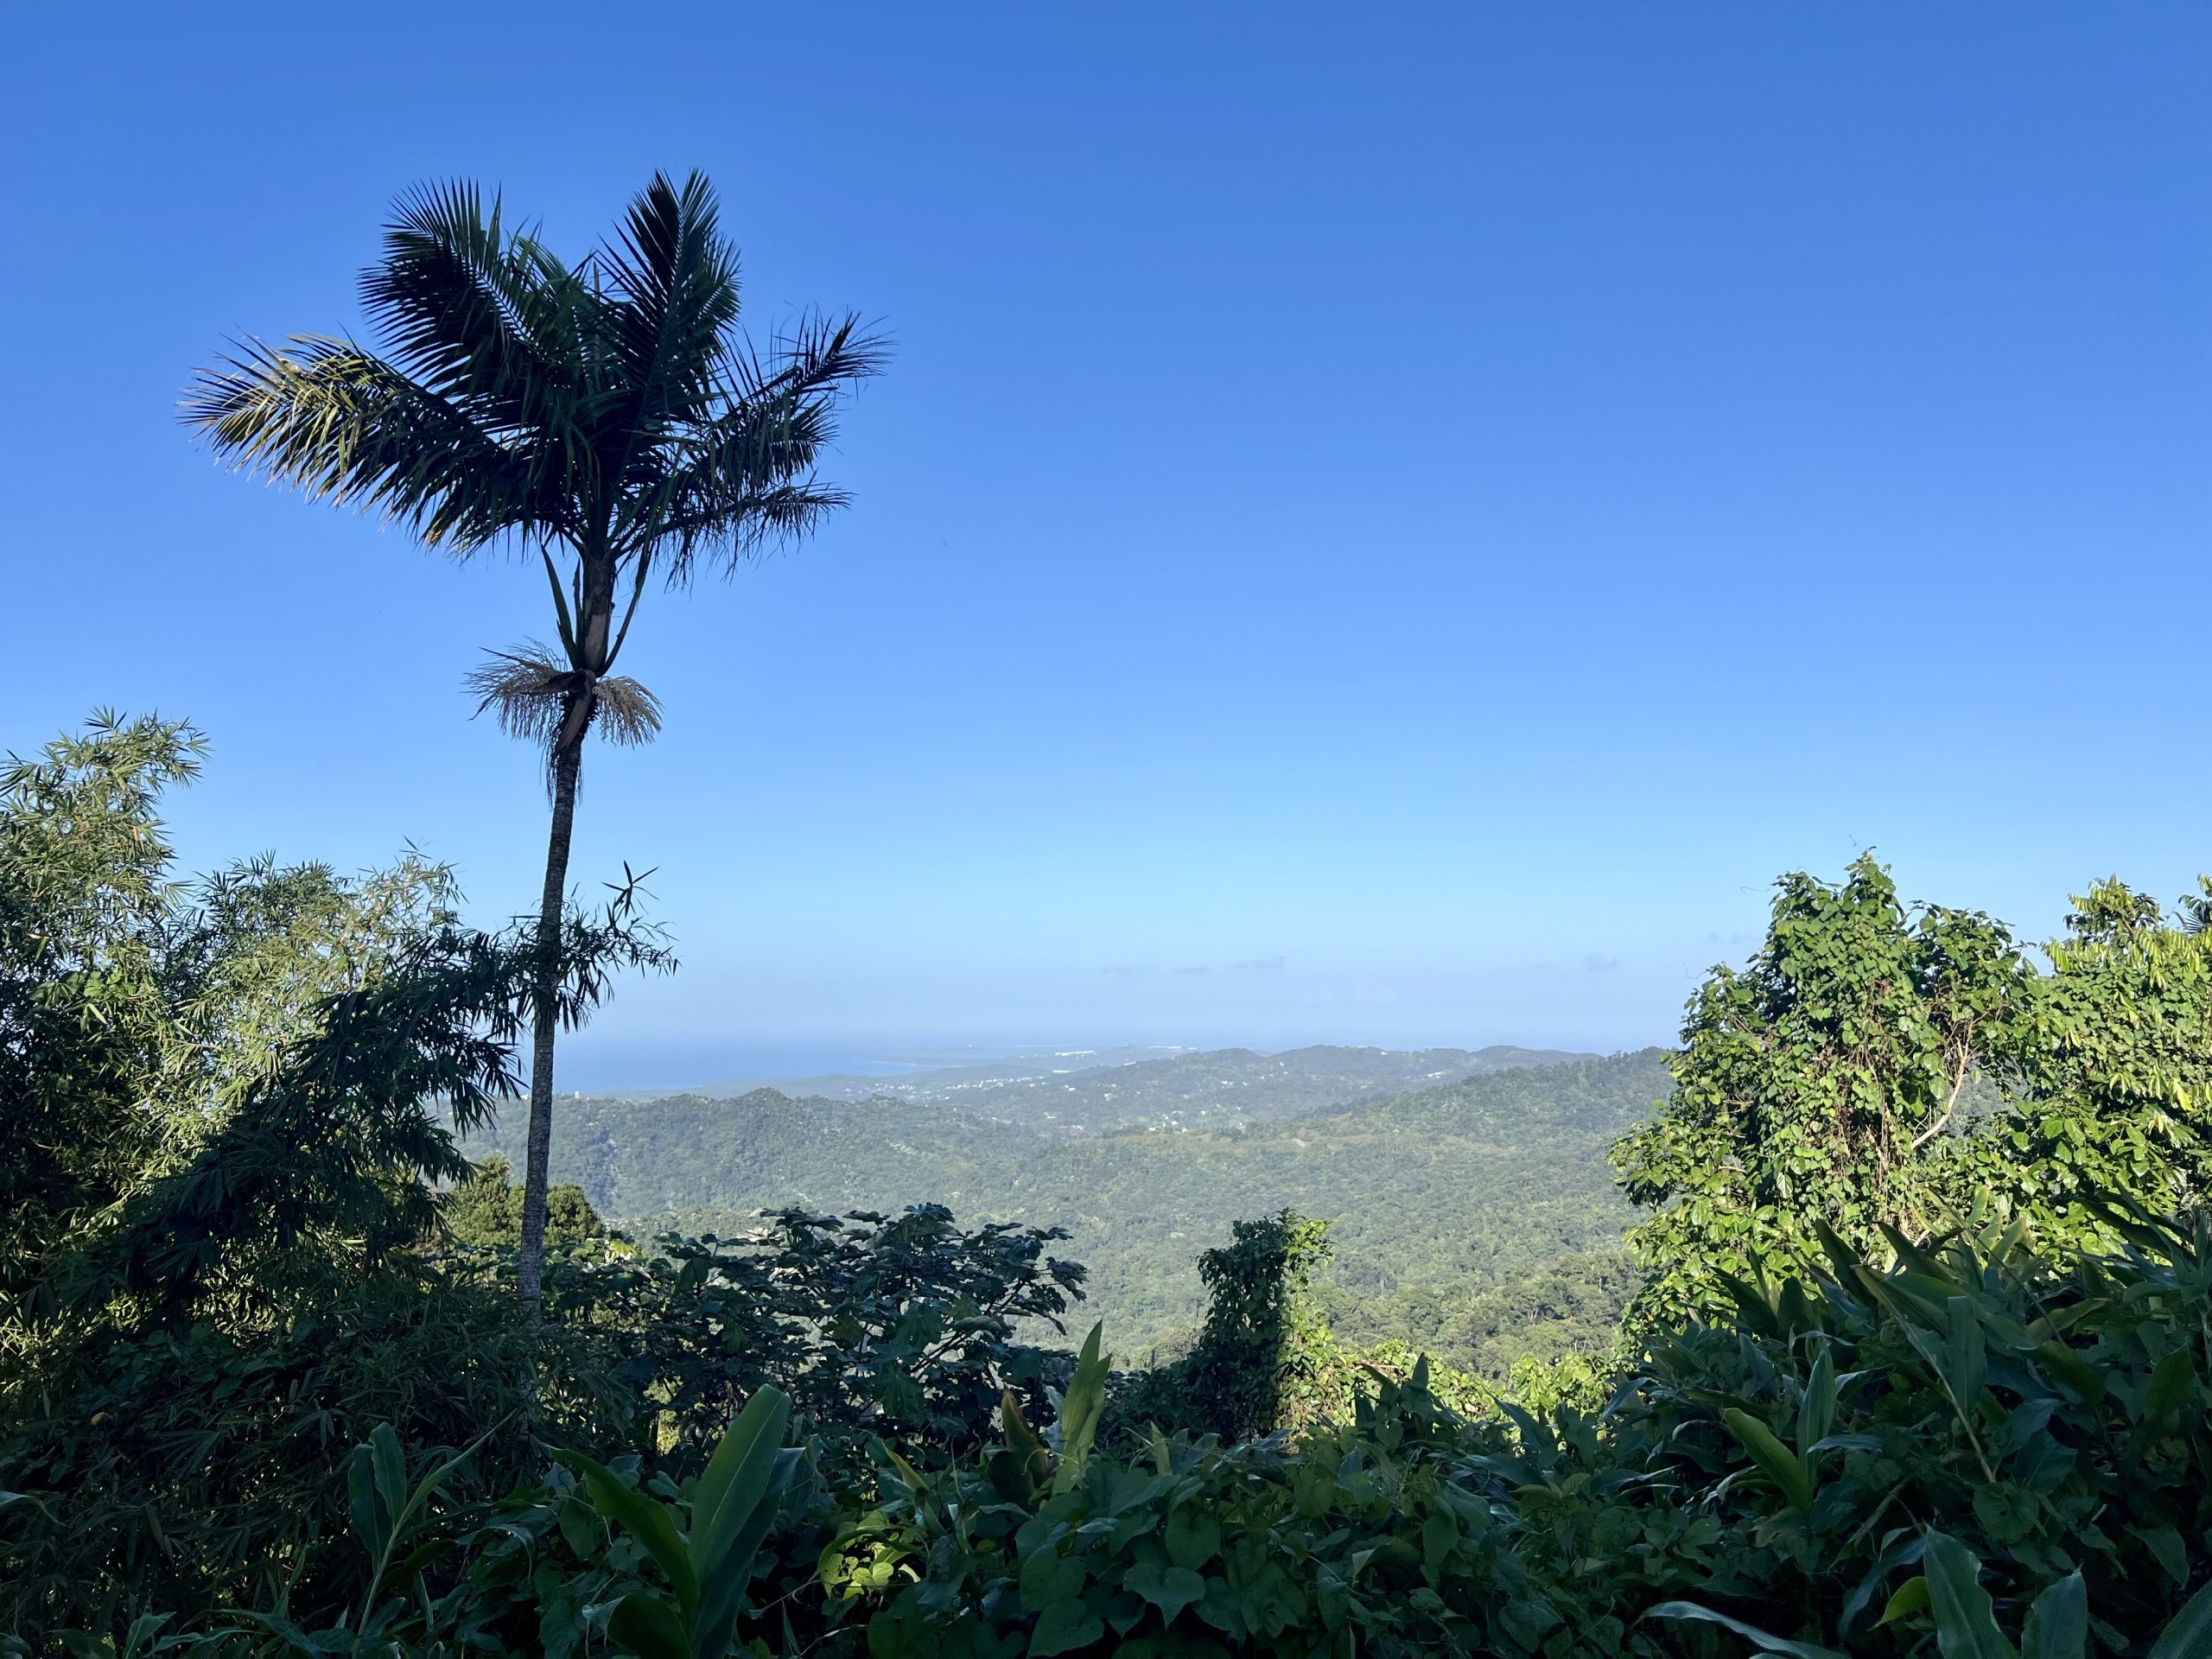 Het enorm grote regenwoud El Yunque is 18.000 hectare groot. Genoeg om te ontdekken dus!